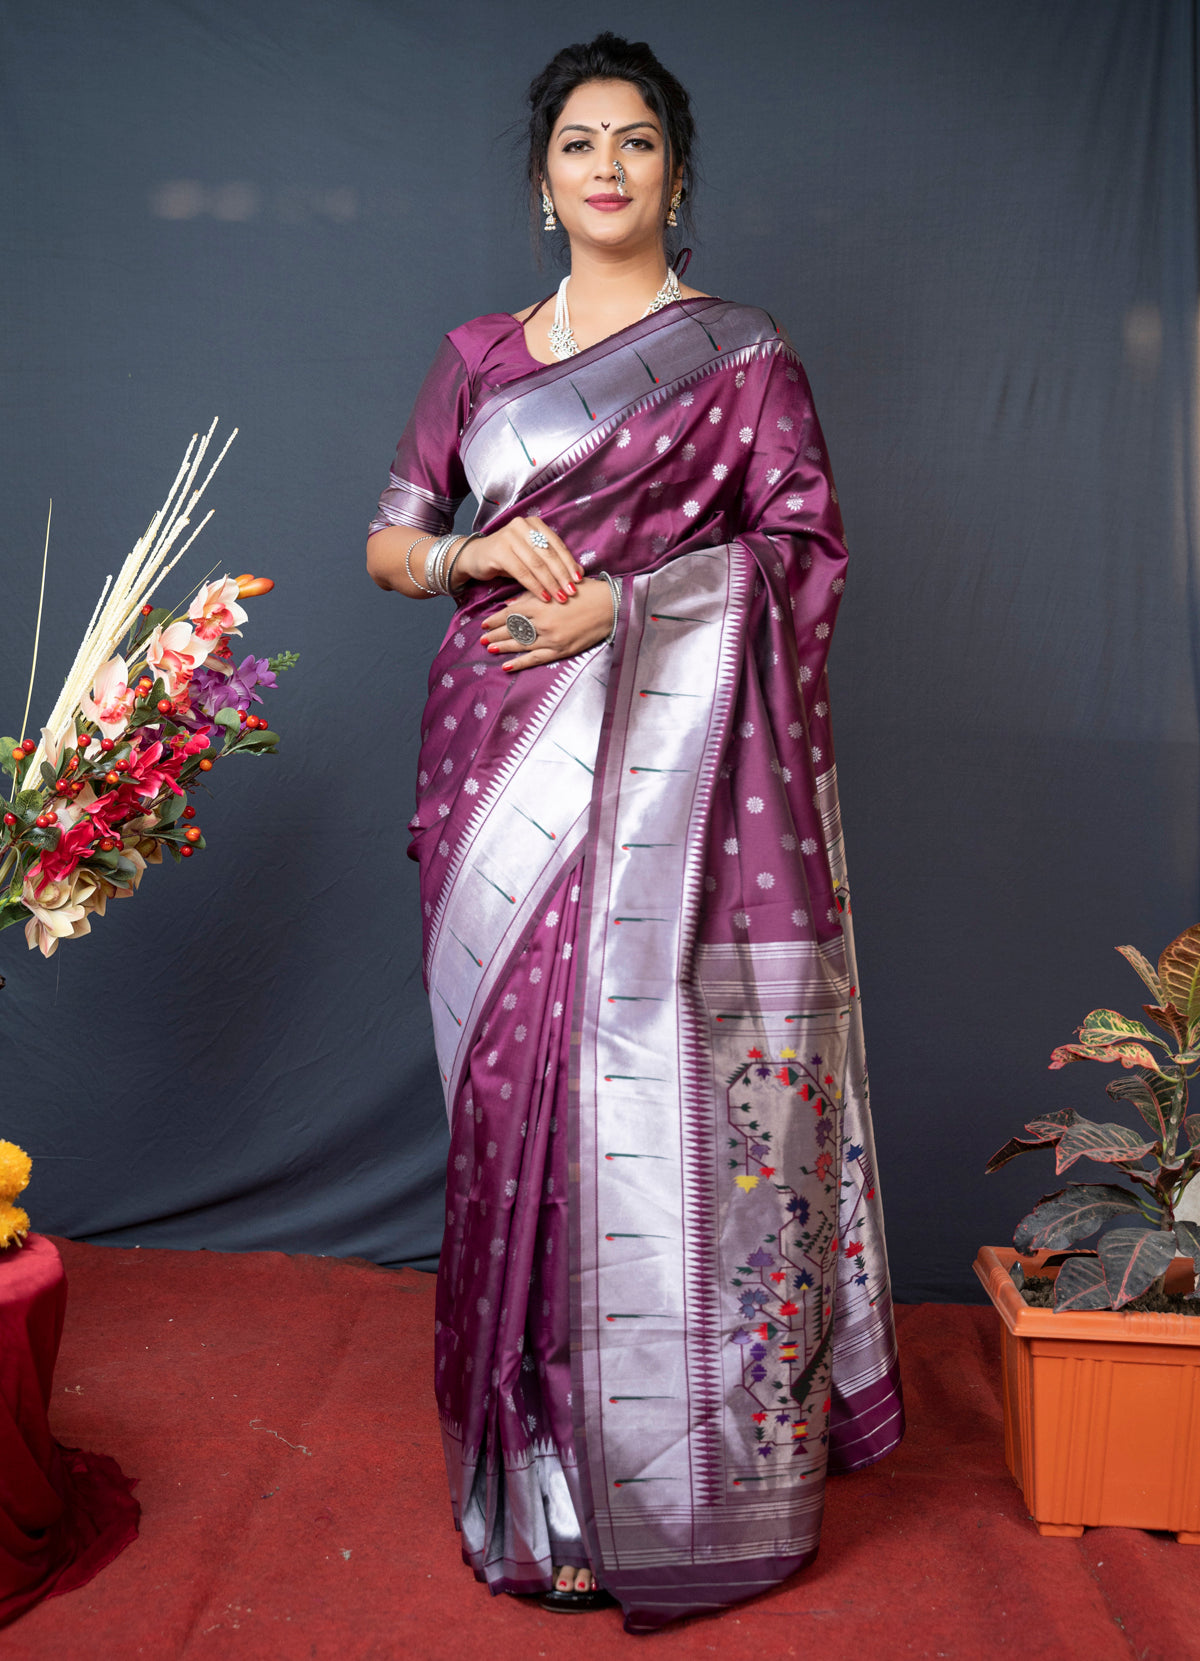 Where can I buy an original Marathi Paithani saree in Mumbai? - Quora